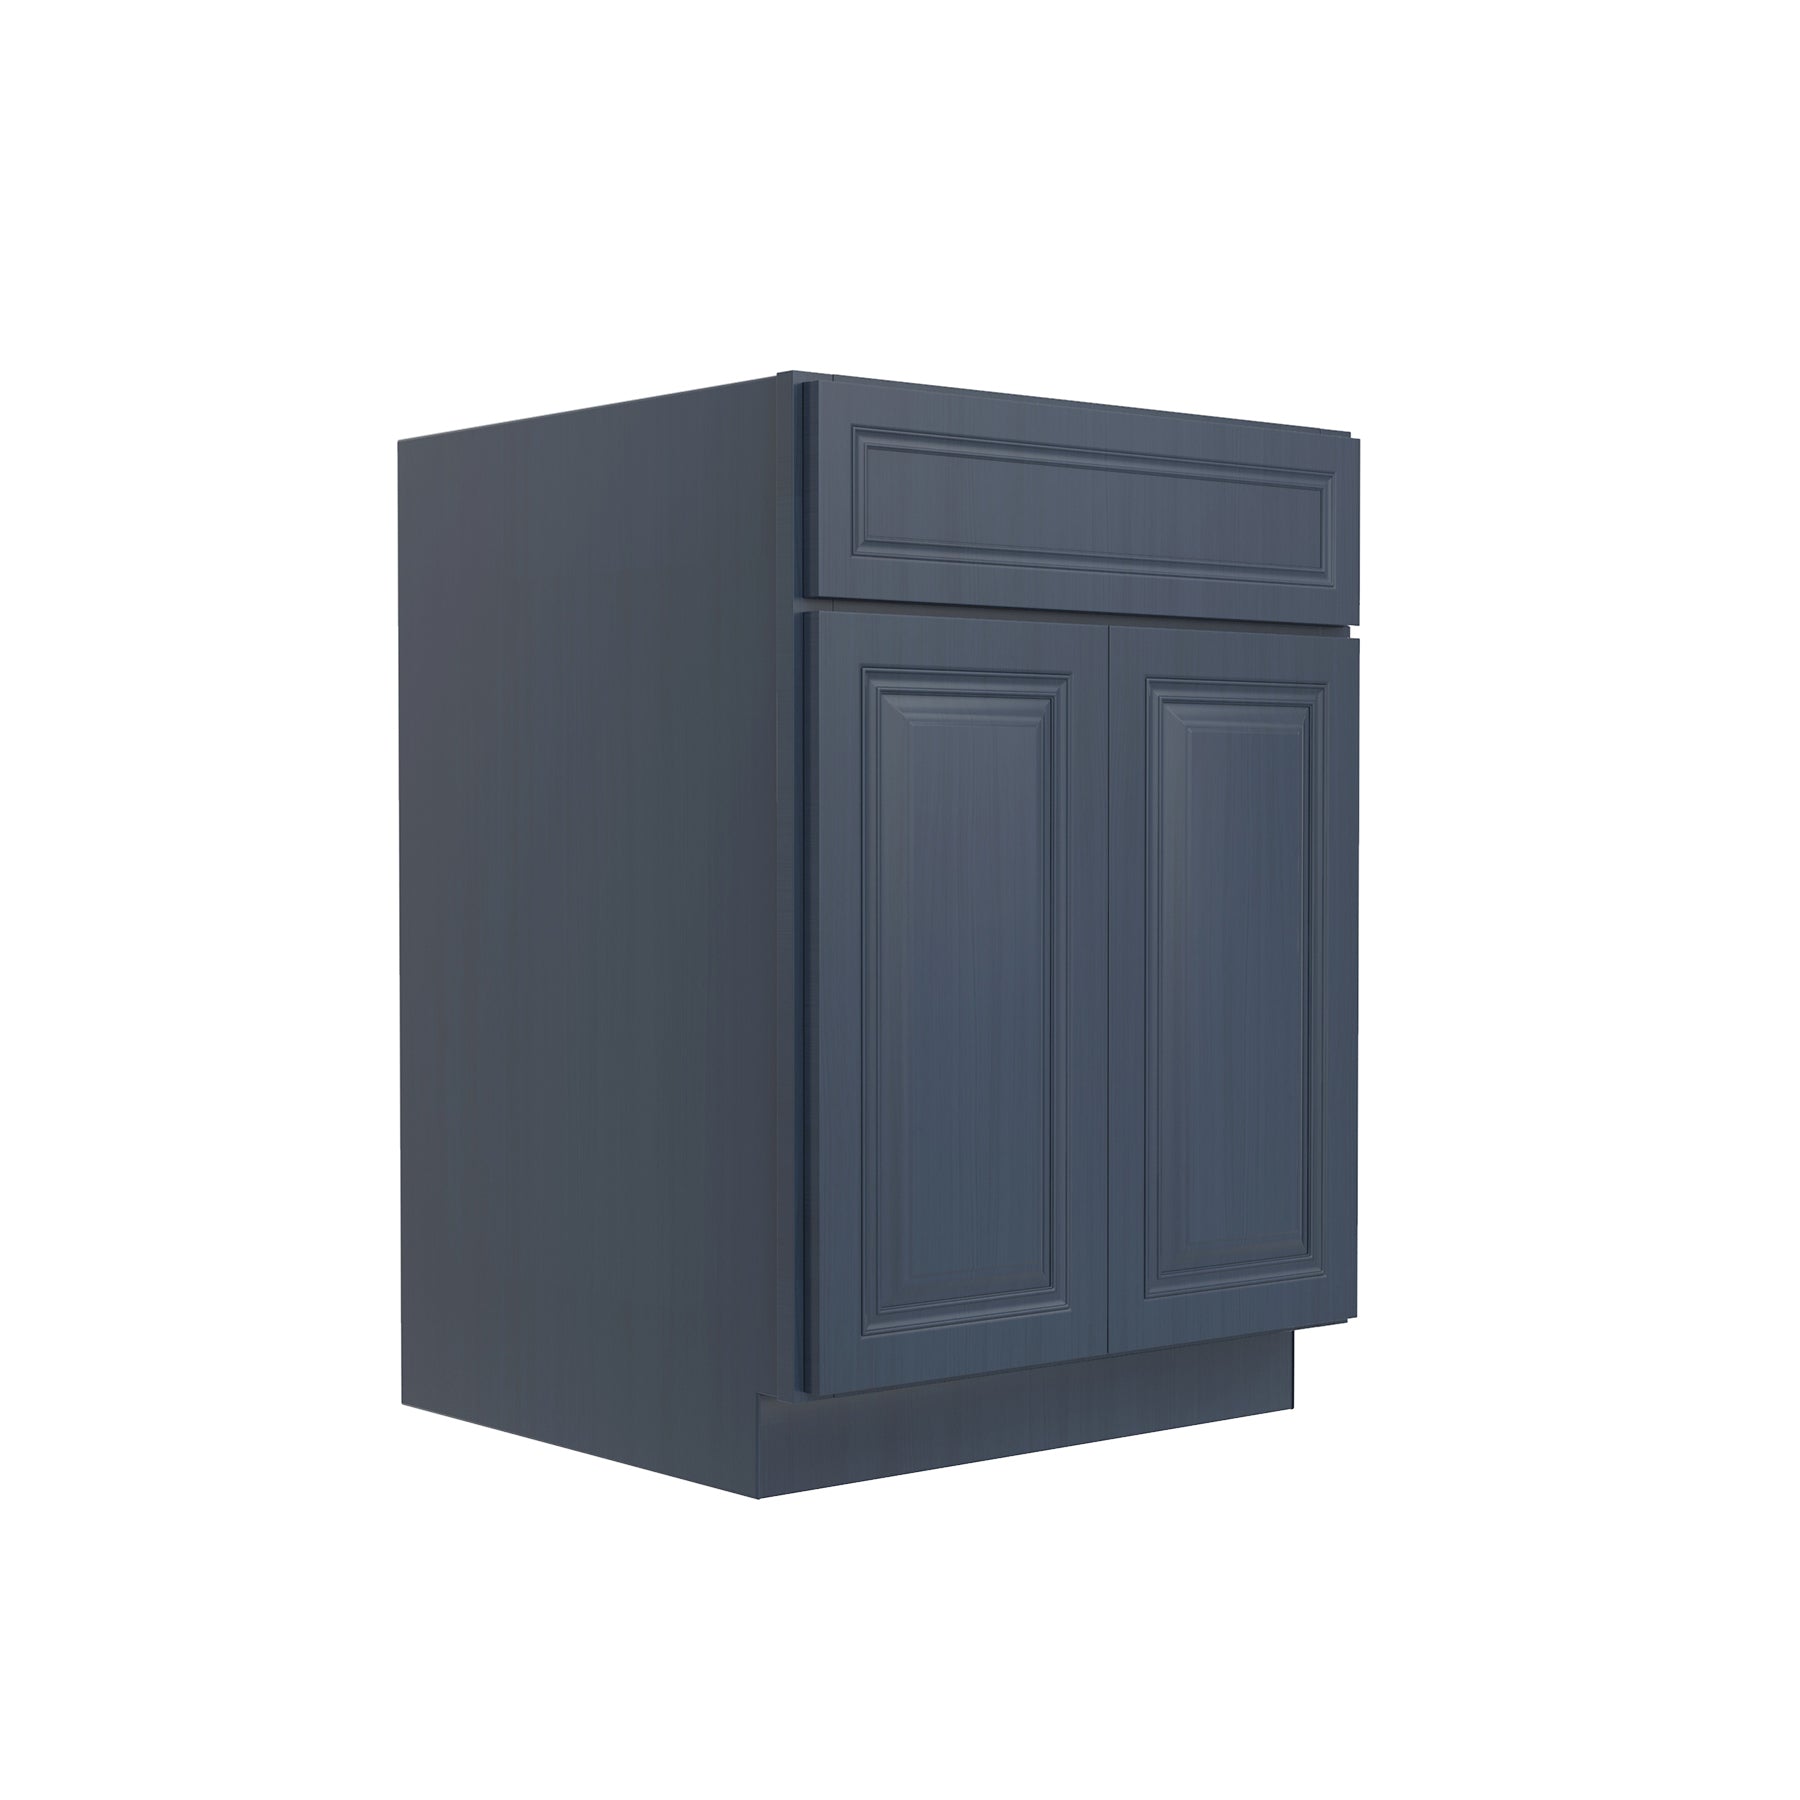 Park Avenue Ocean Blue - Sink Base Cabinet | 24"W x 34.5"H x 24"D